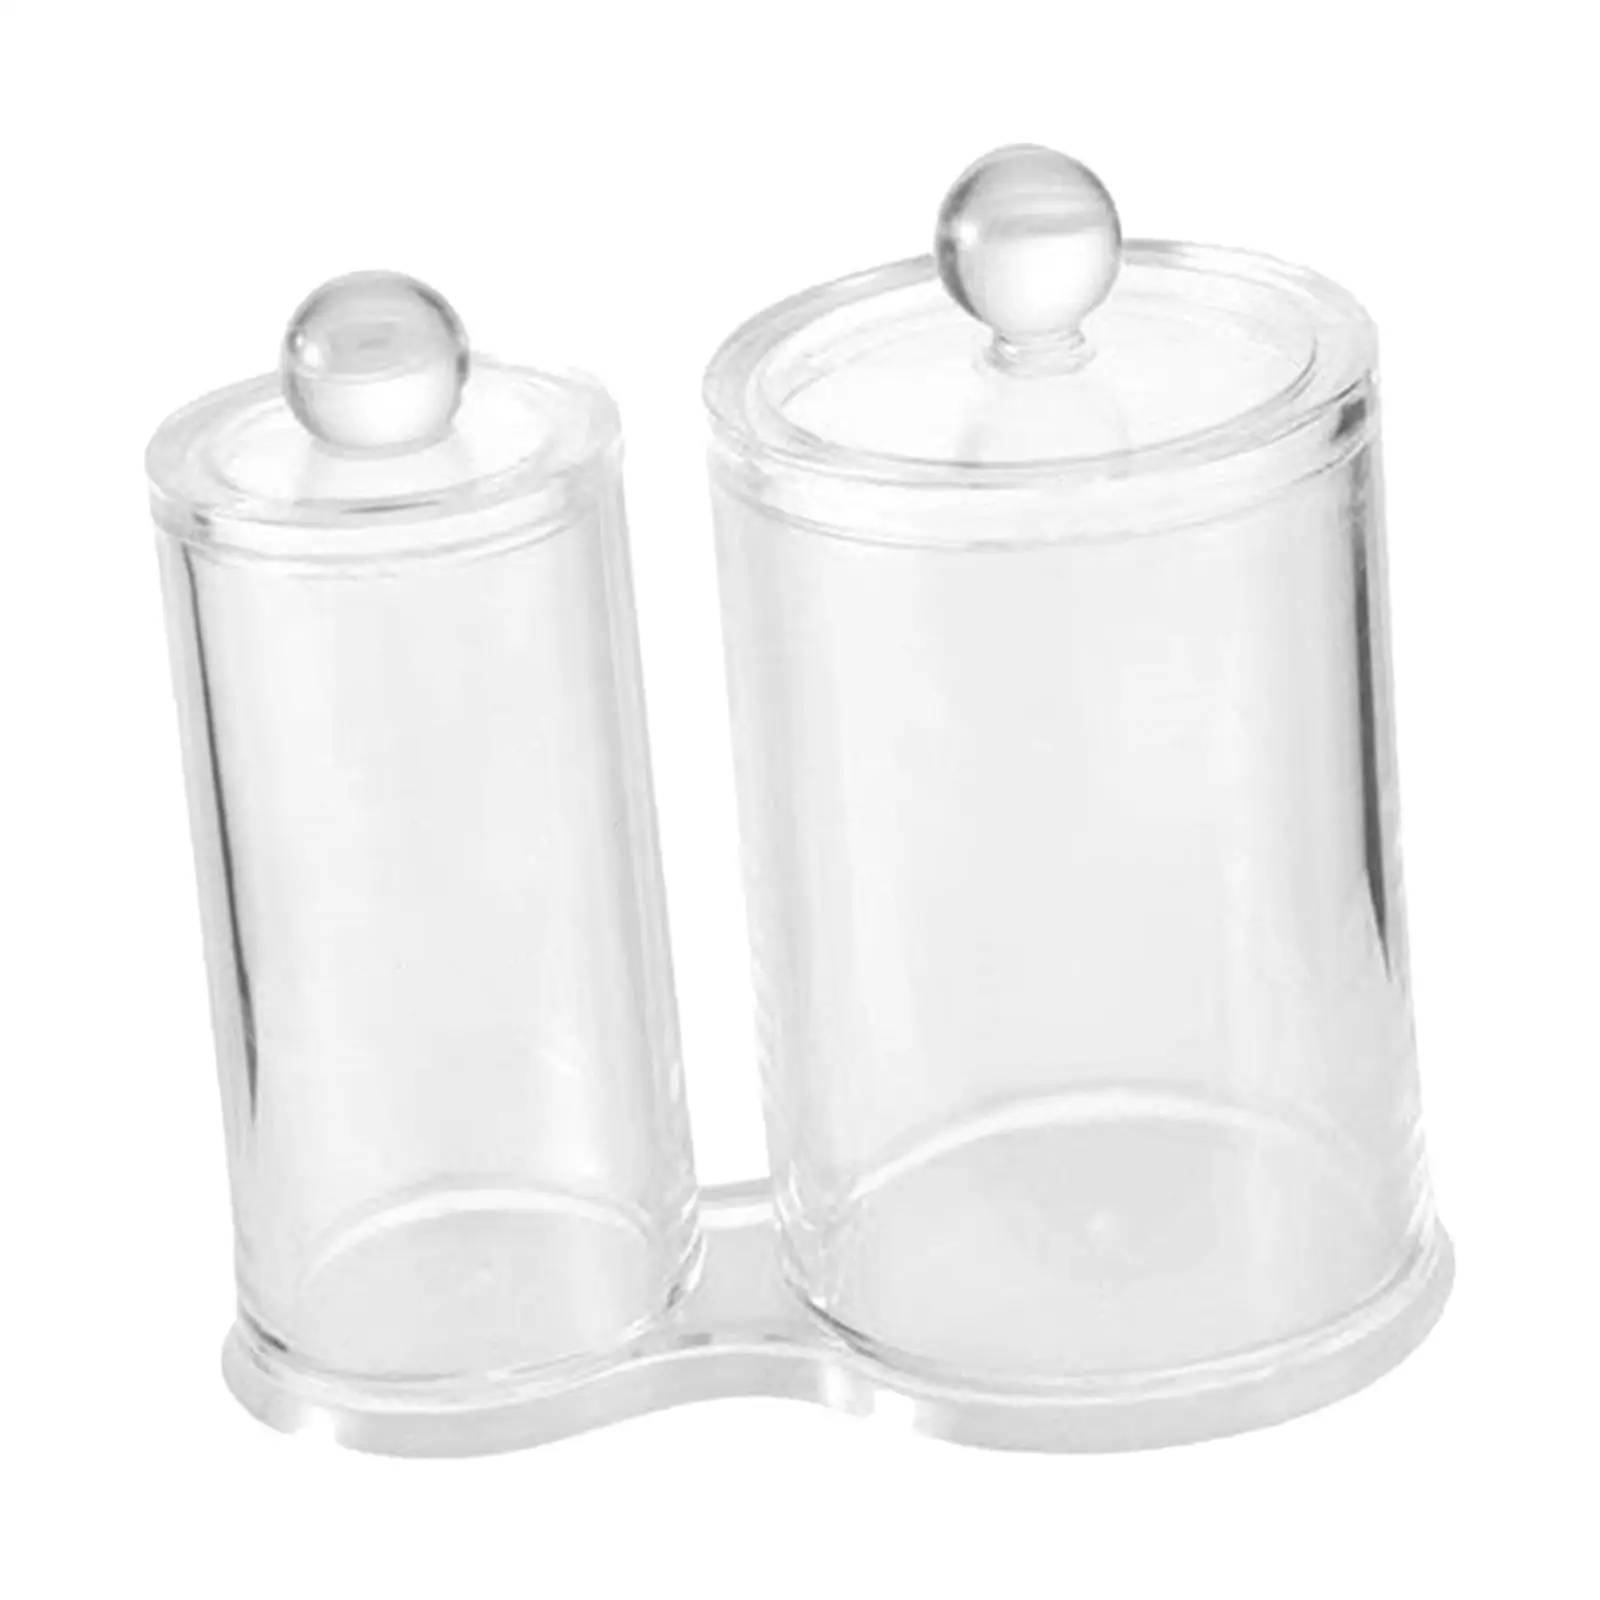 Cotton Swab Ball Pad Holder  Holder Dispenser Vanity Organizer Storage Storage Container for  Living Room Kitchen Bathroom